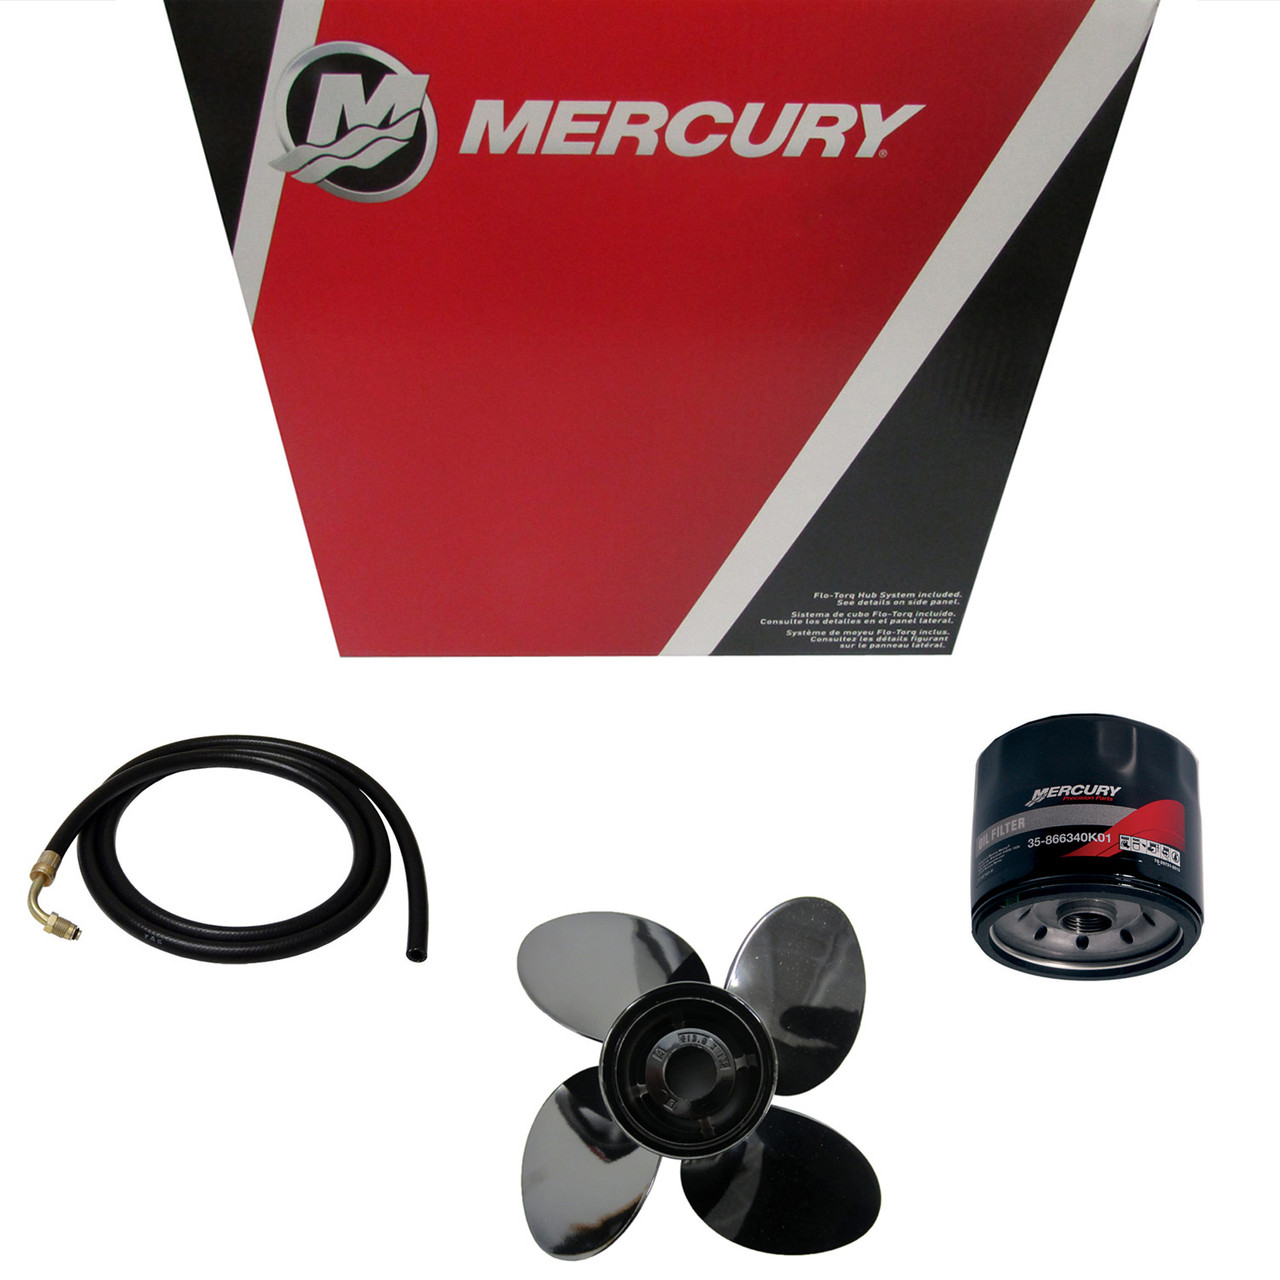 Mercury Marine / Mercruiser New OEM Intercooler Body, 879194206